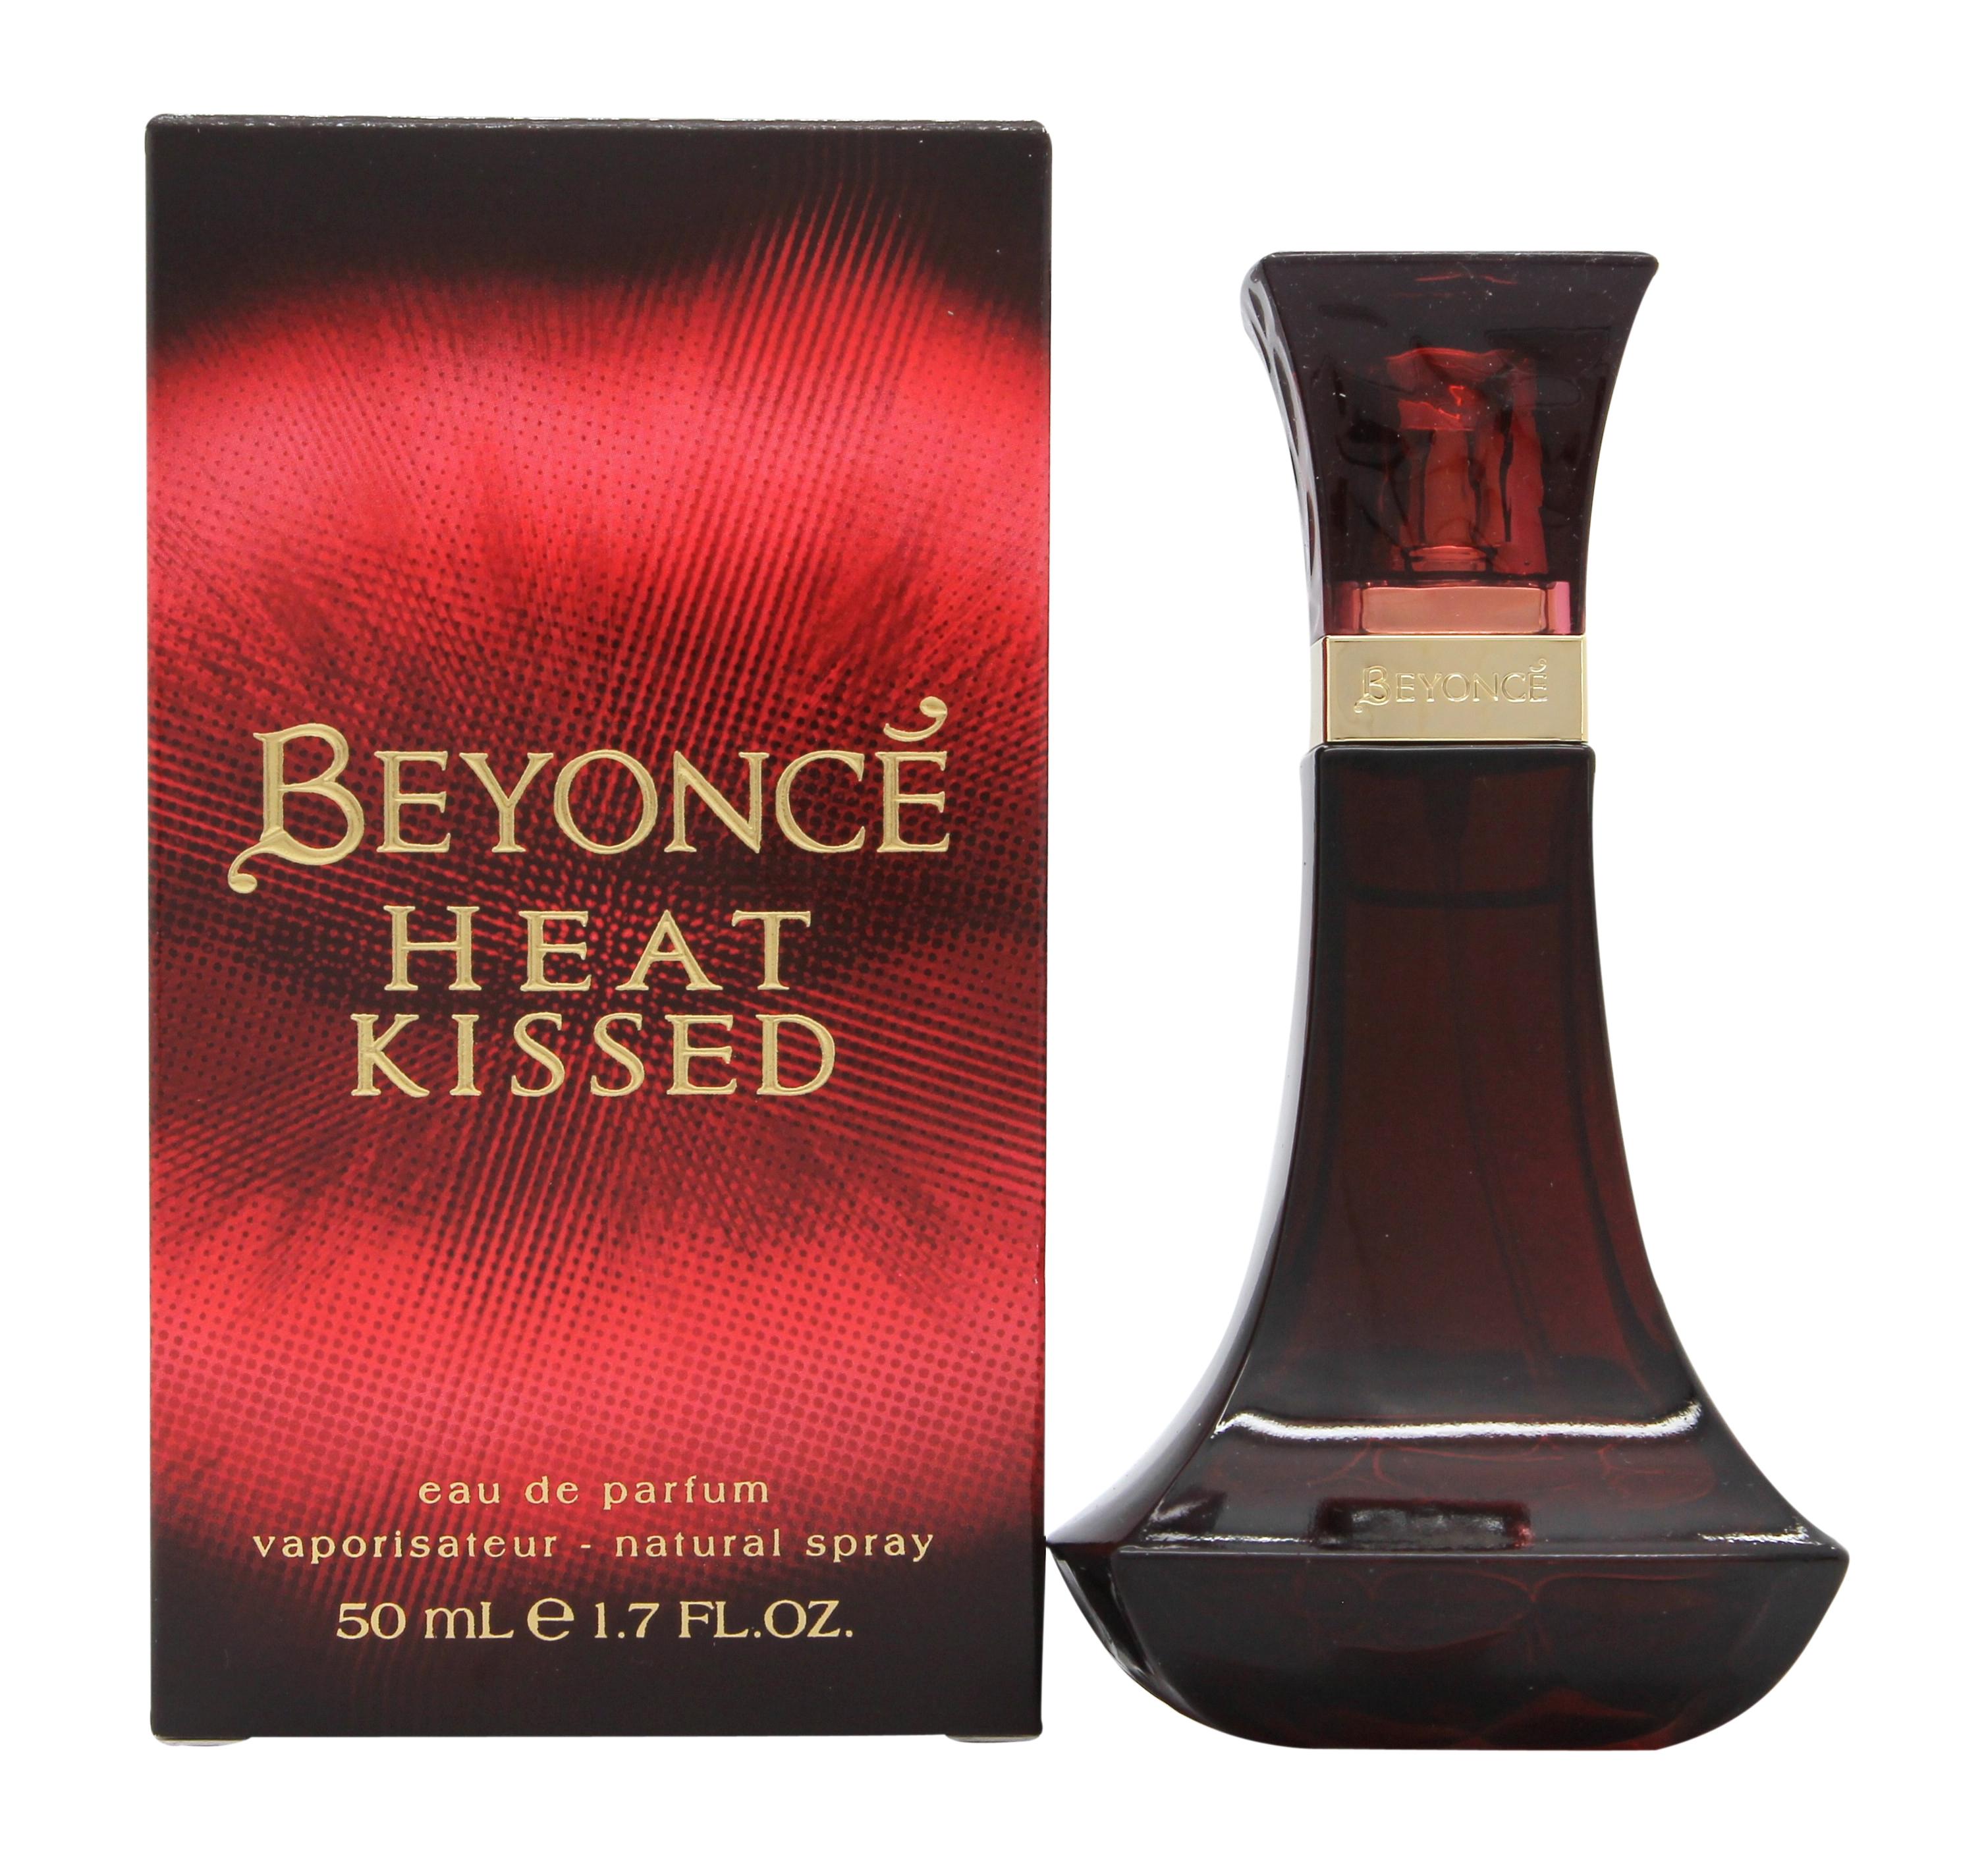 Beyonce Heat Kissed Eau de Parfum 50ml Spray